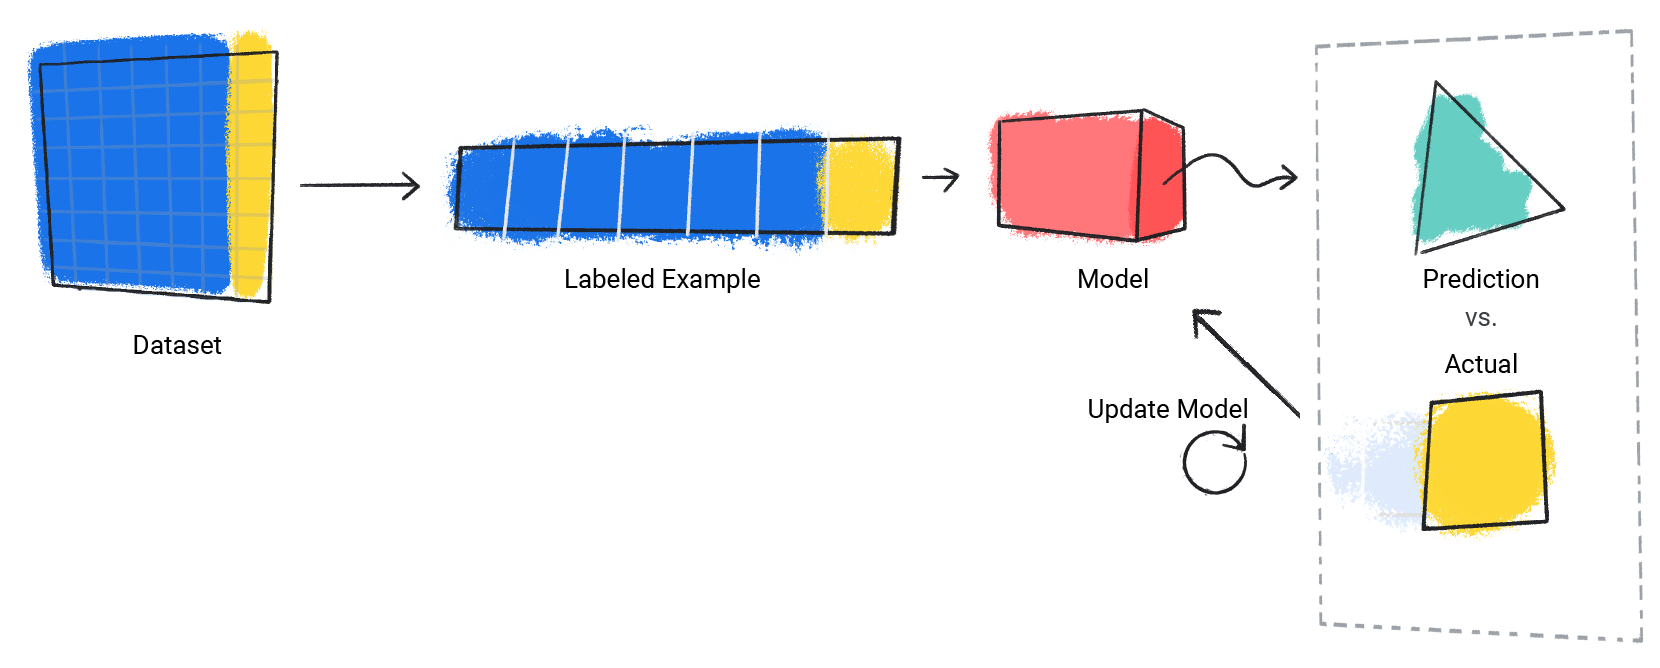 Immagine di un modello che ripete il processo della sua previsione rispetto al valore effettivo.